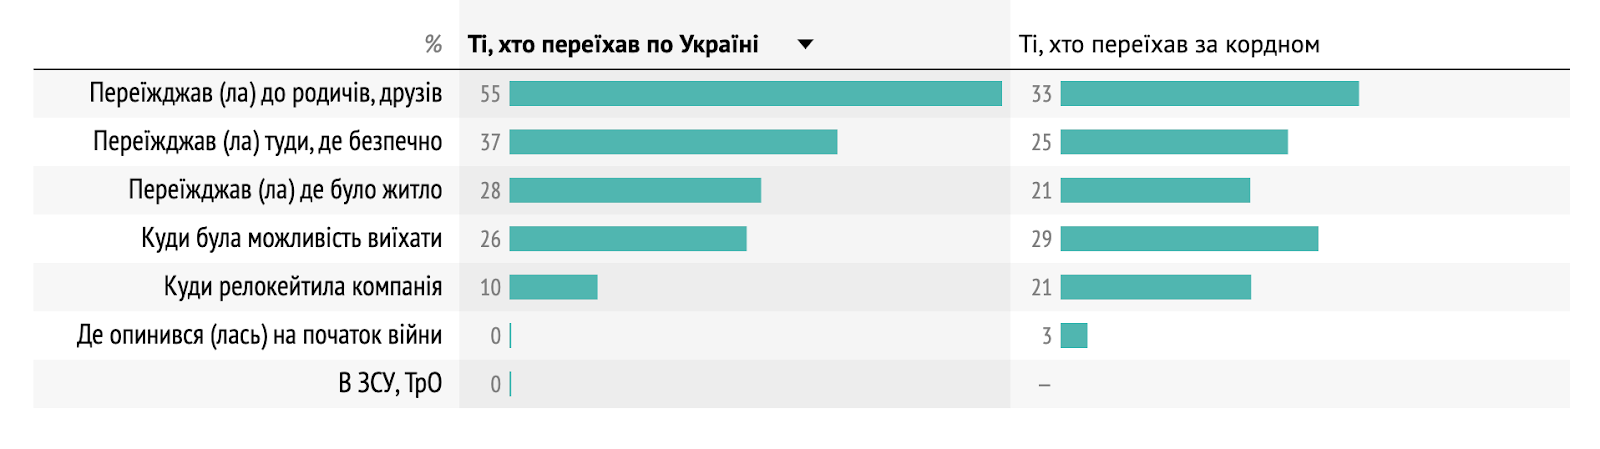 Як спеціалісти з IT-сфери обирали місце для переїзду у межах України та за кордон — дані Dou.ua